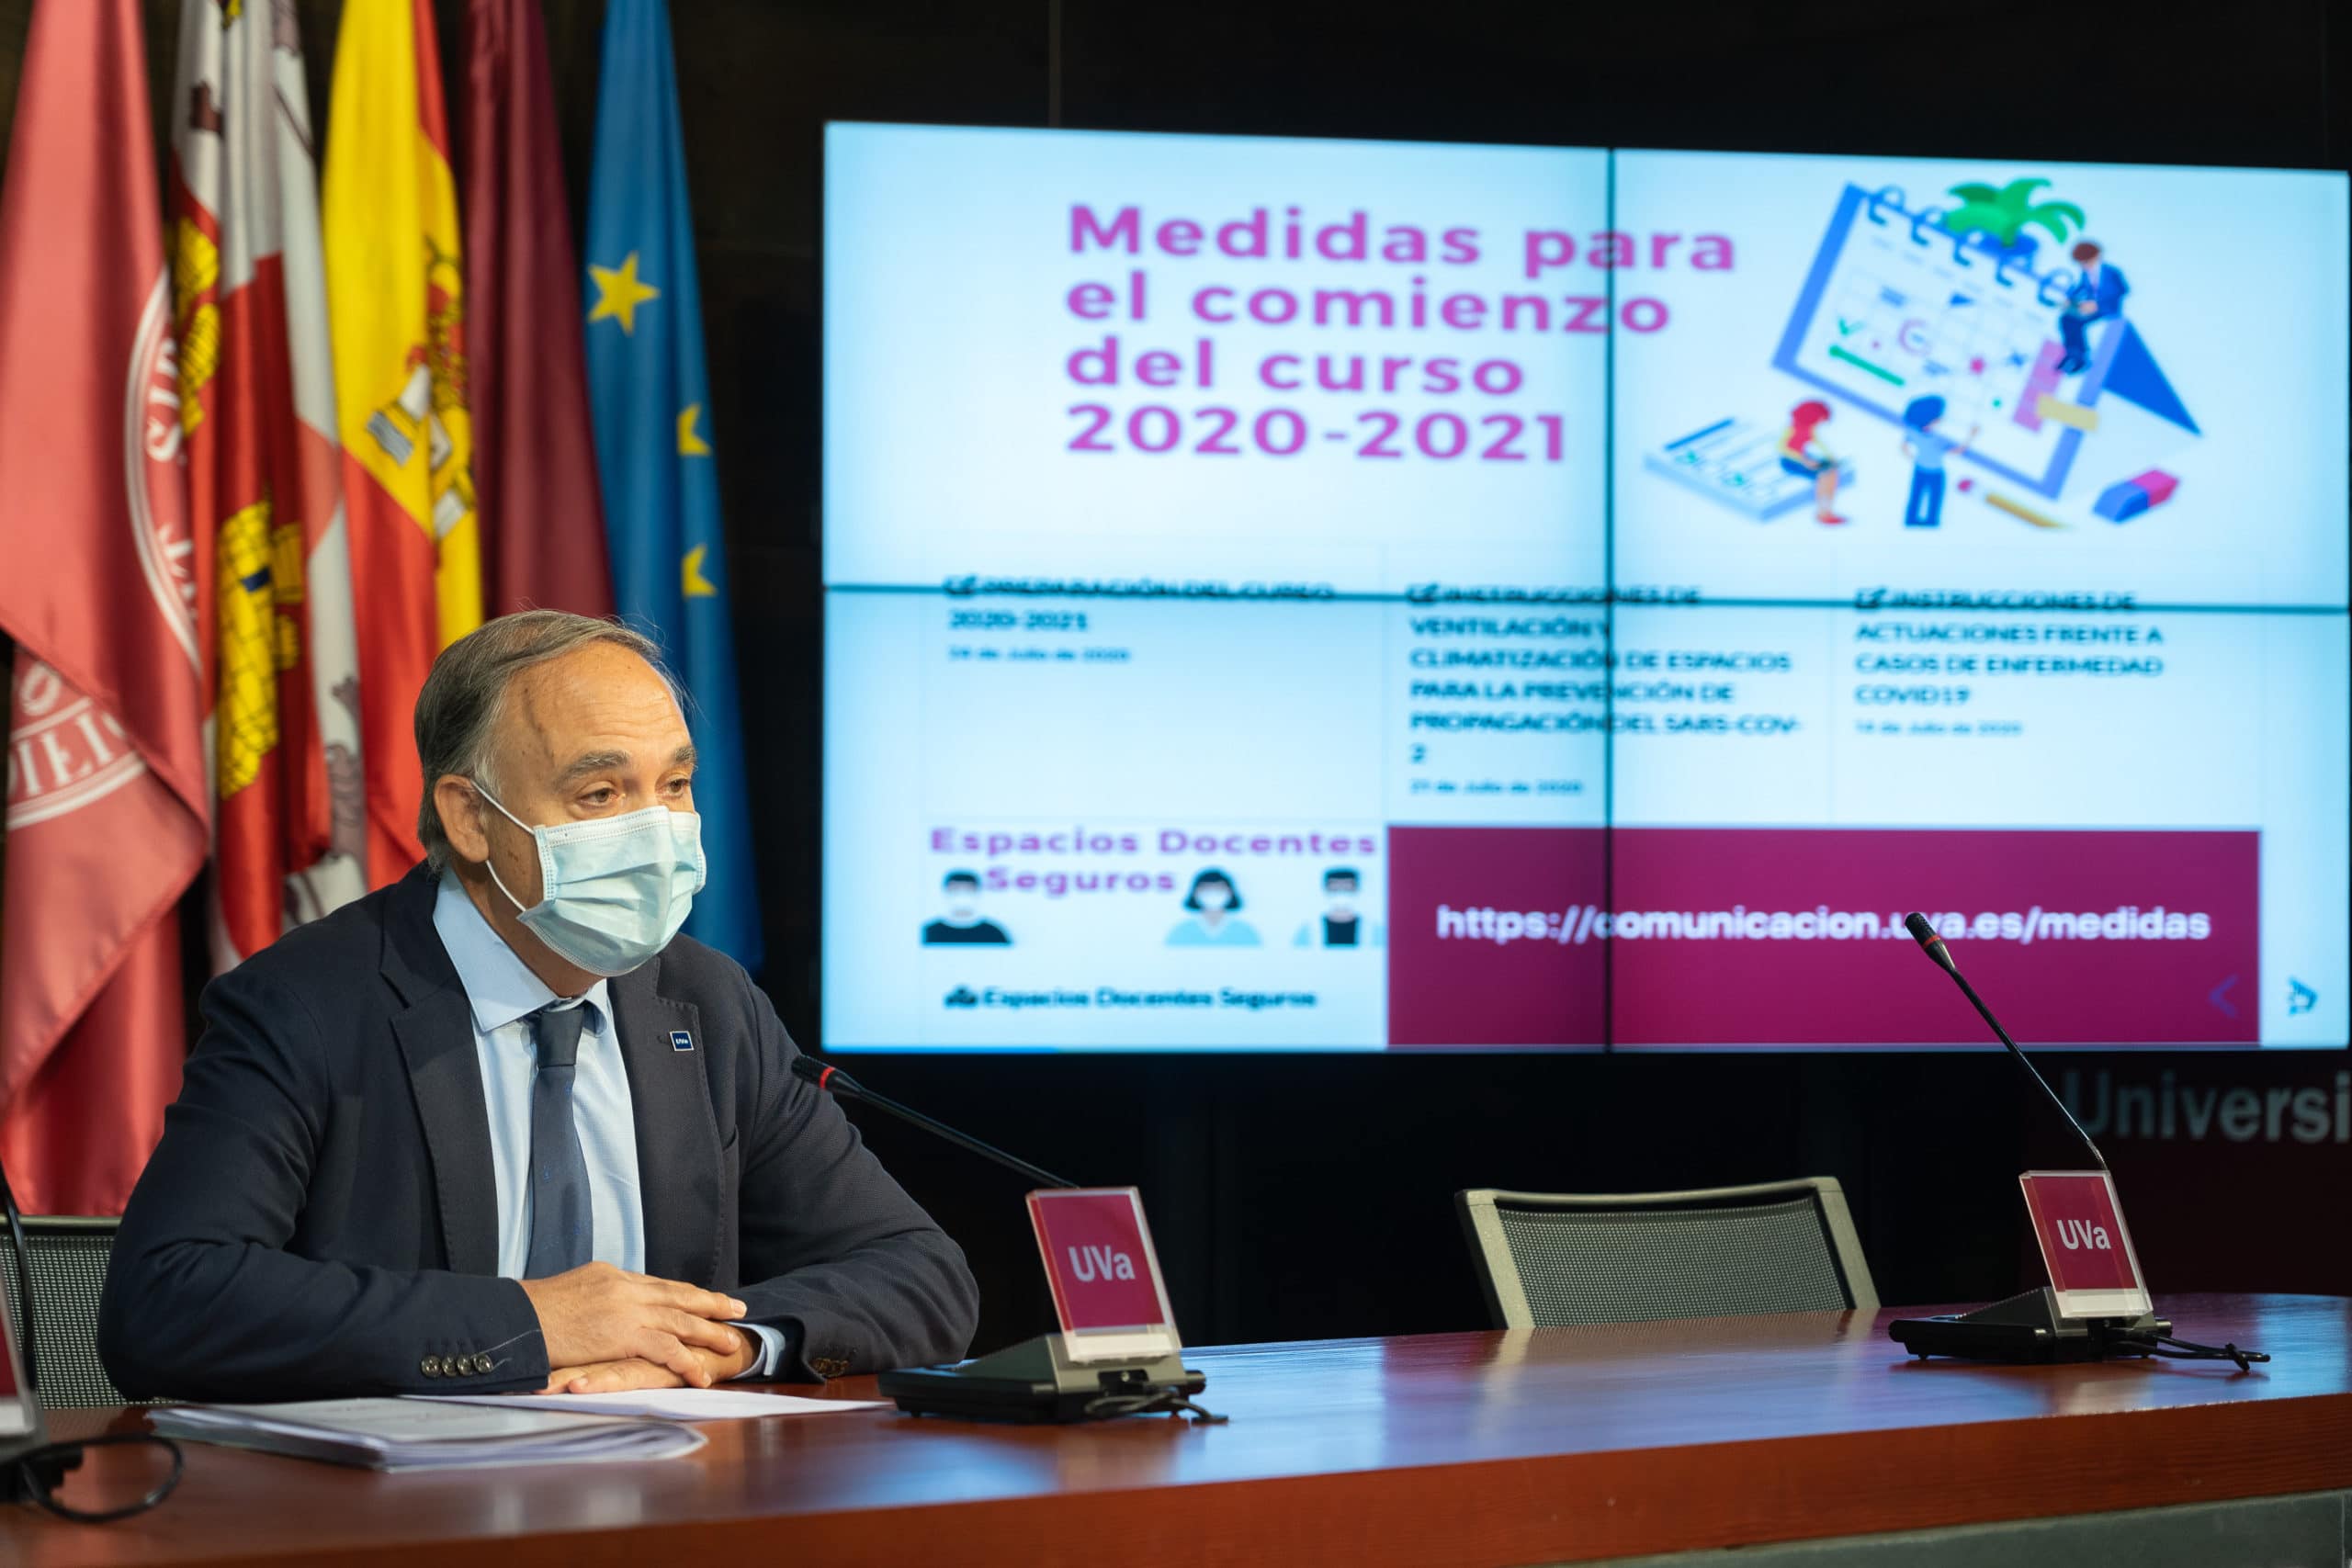 El plan de contingencia de la Universidad de Valladolid ha supuesto 600.000 euros